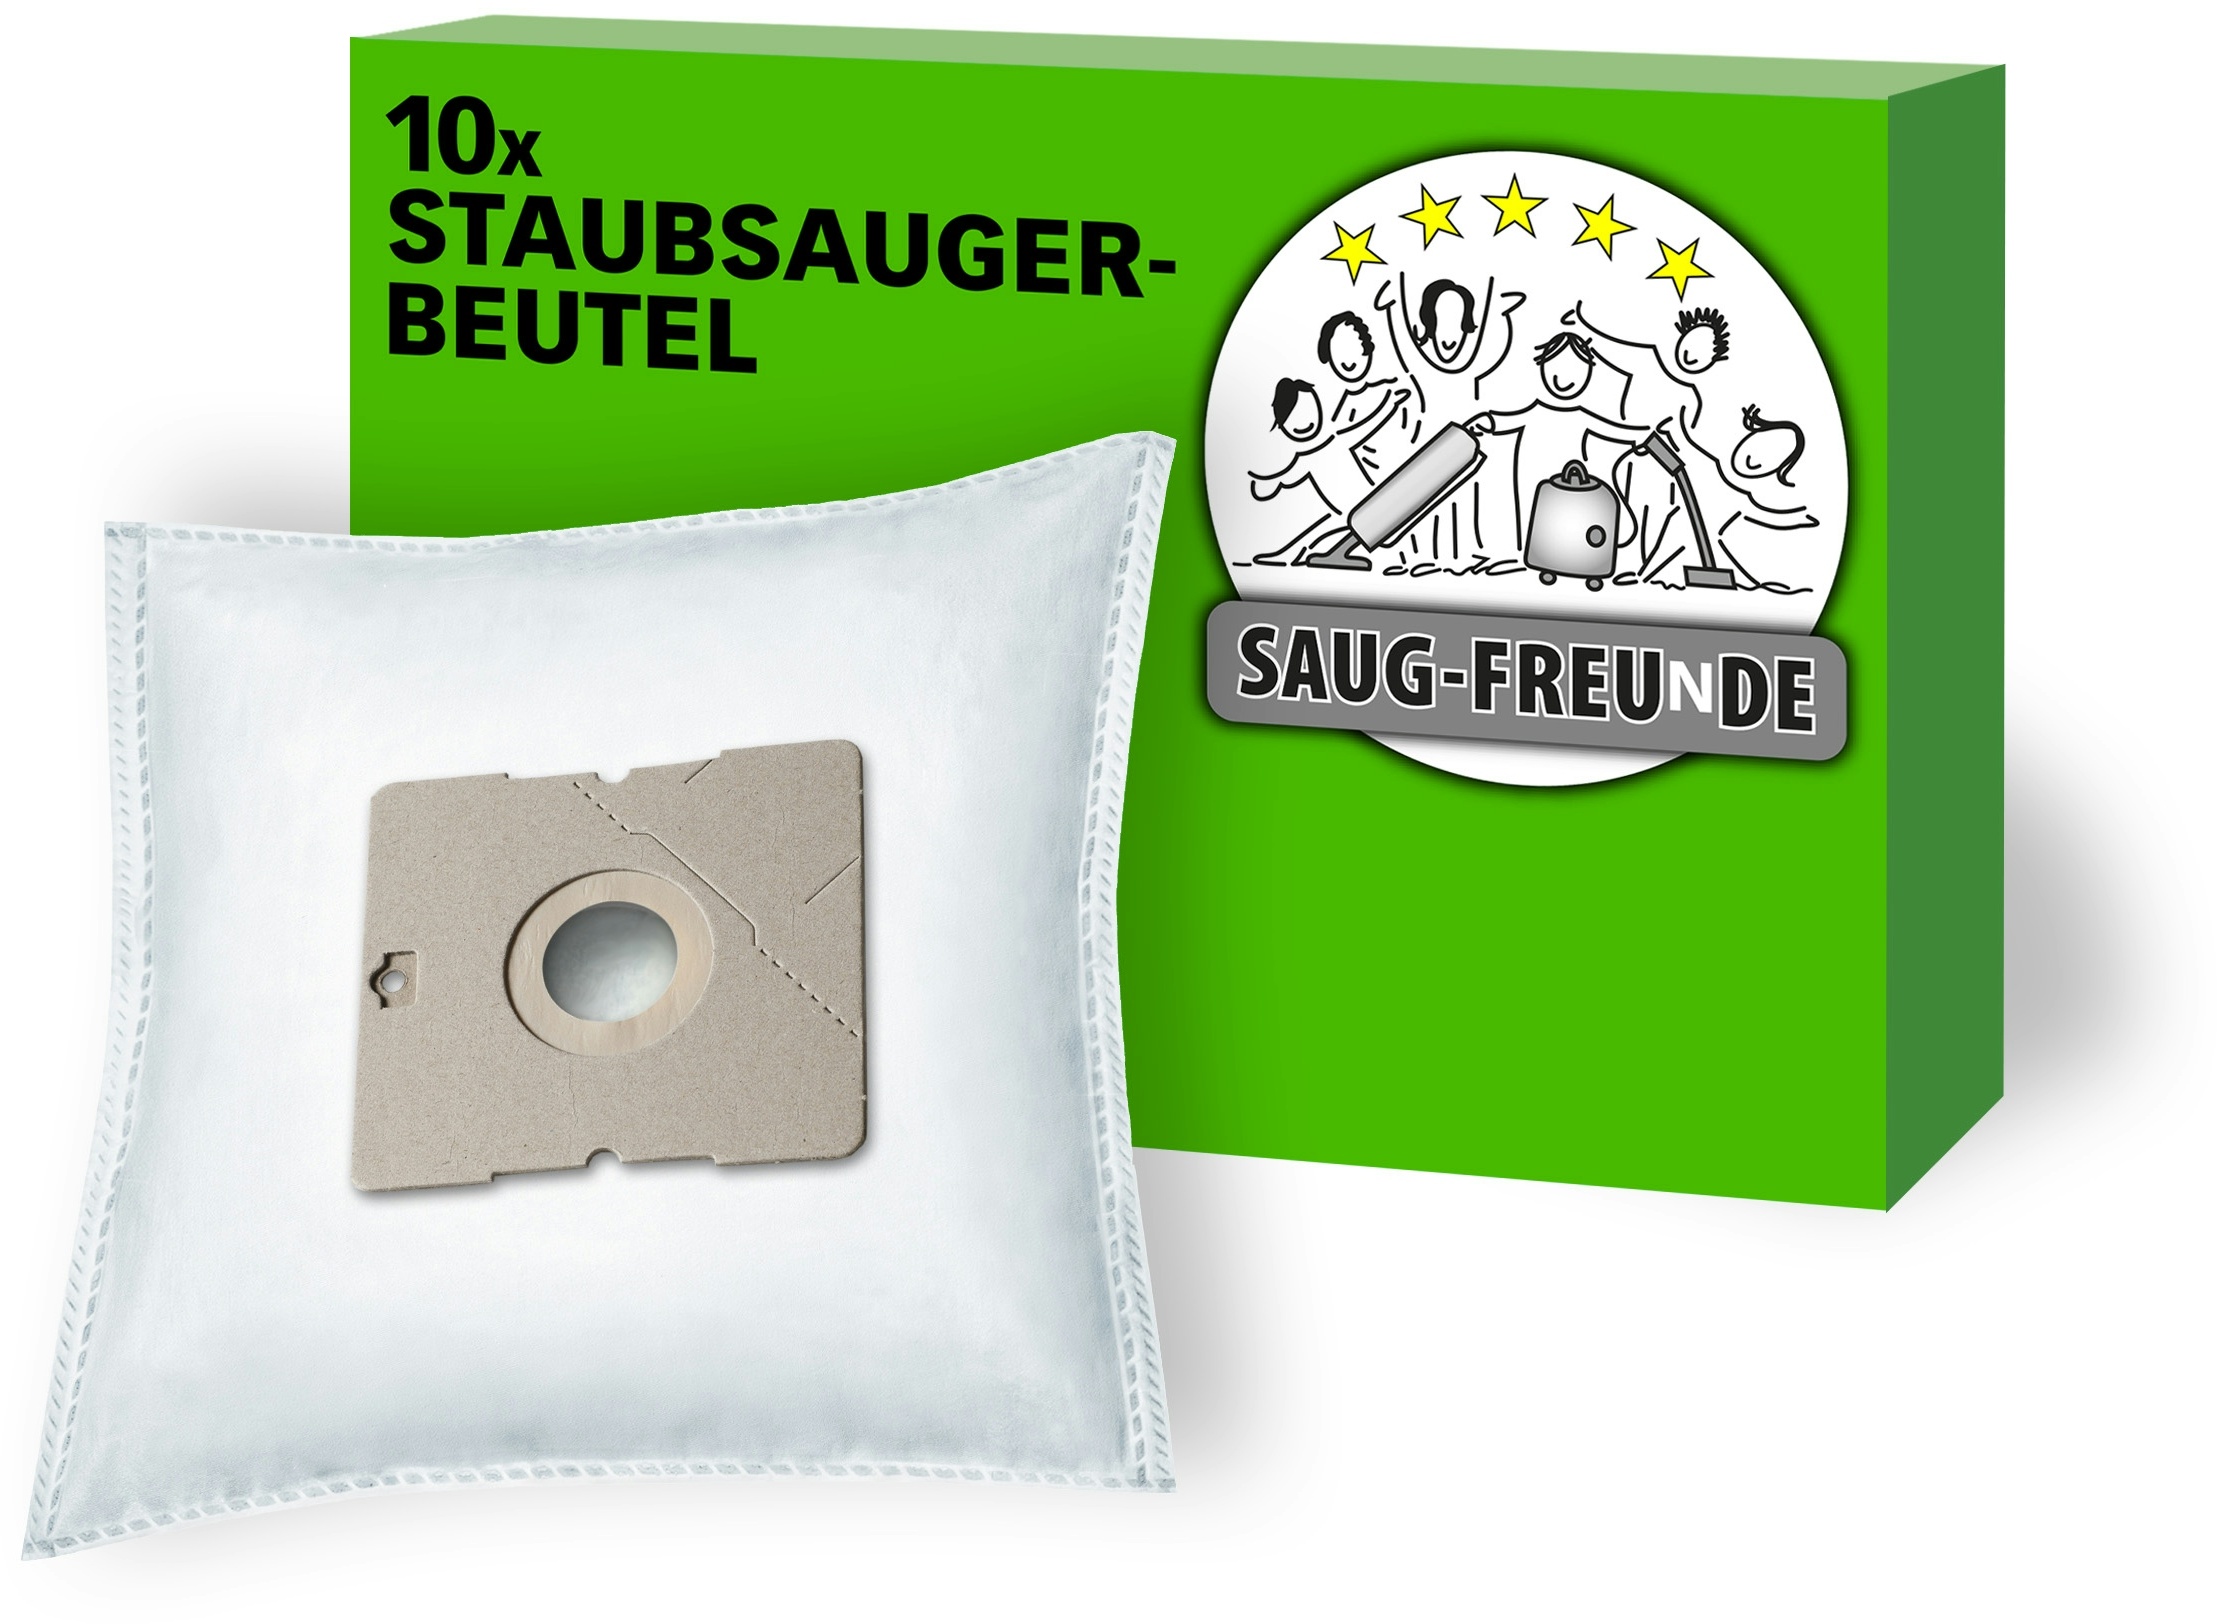 SAUG-FREUnDE | 10 Staubsaugerbeutel für FAKIR A 220 Prestige, A90, A92, A93, A94 (SF-DA6)